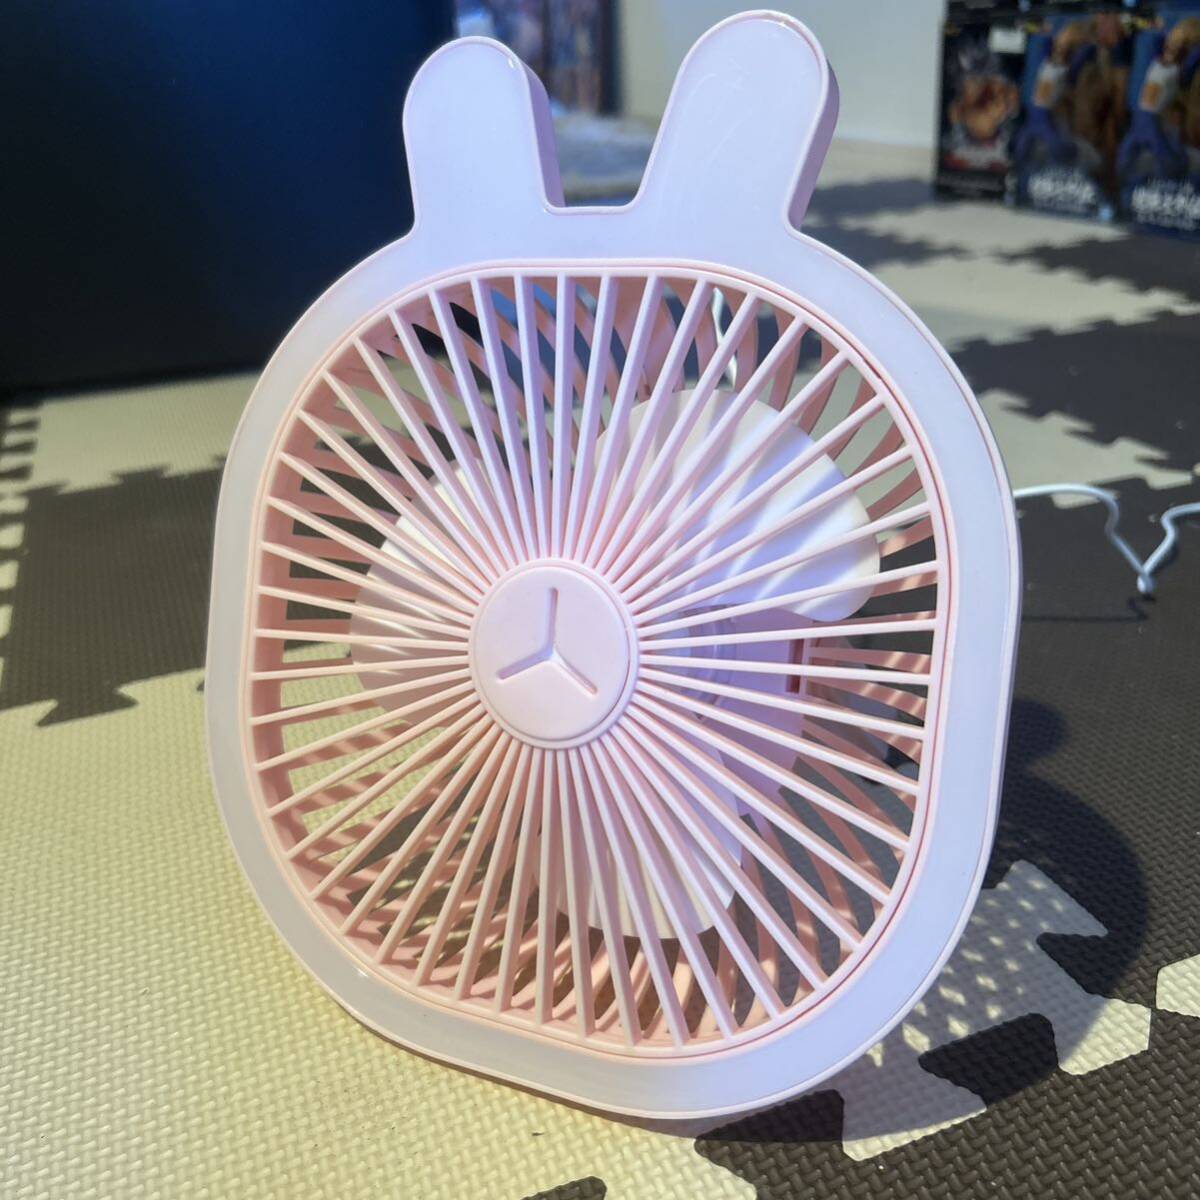  electric fan 